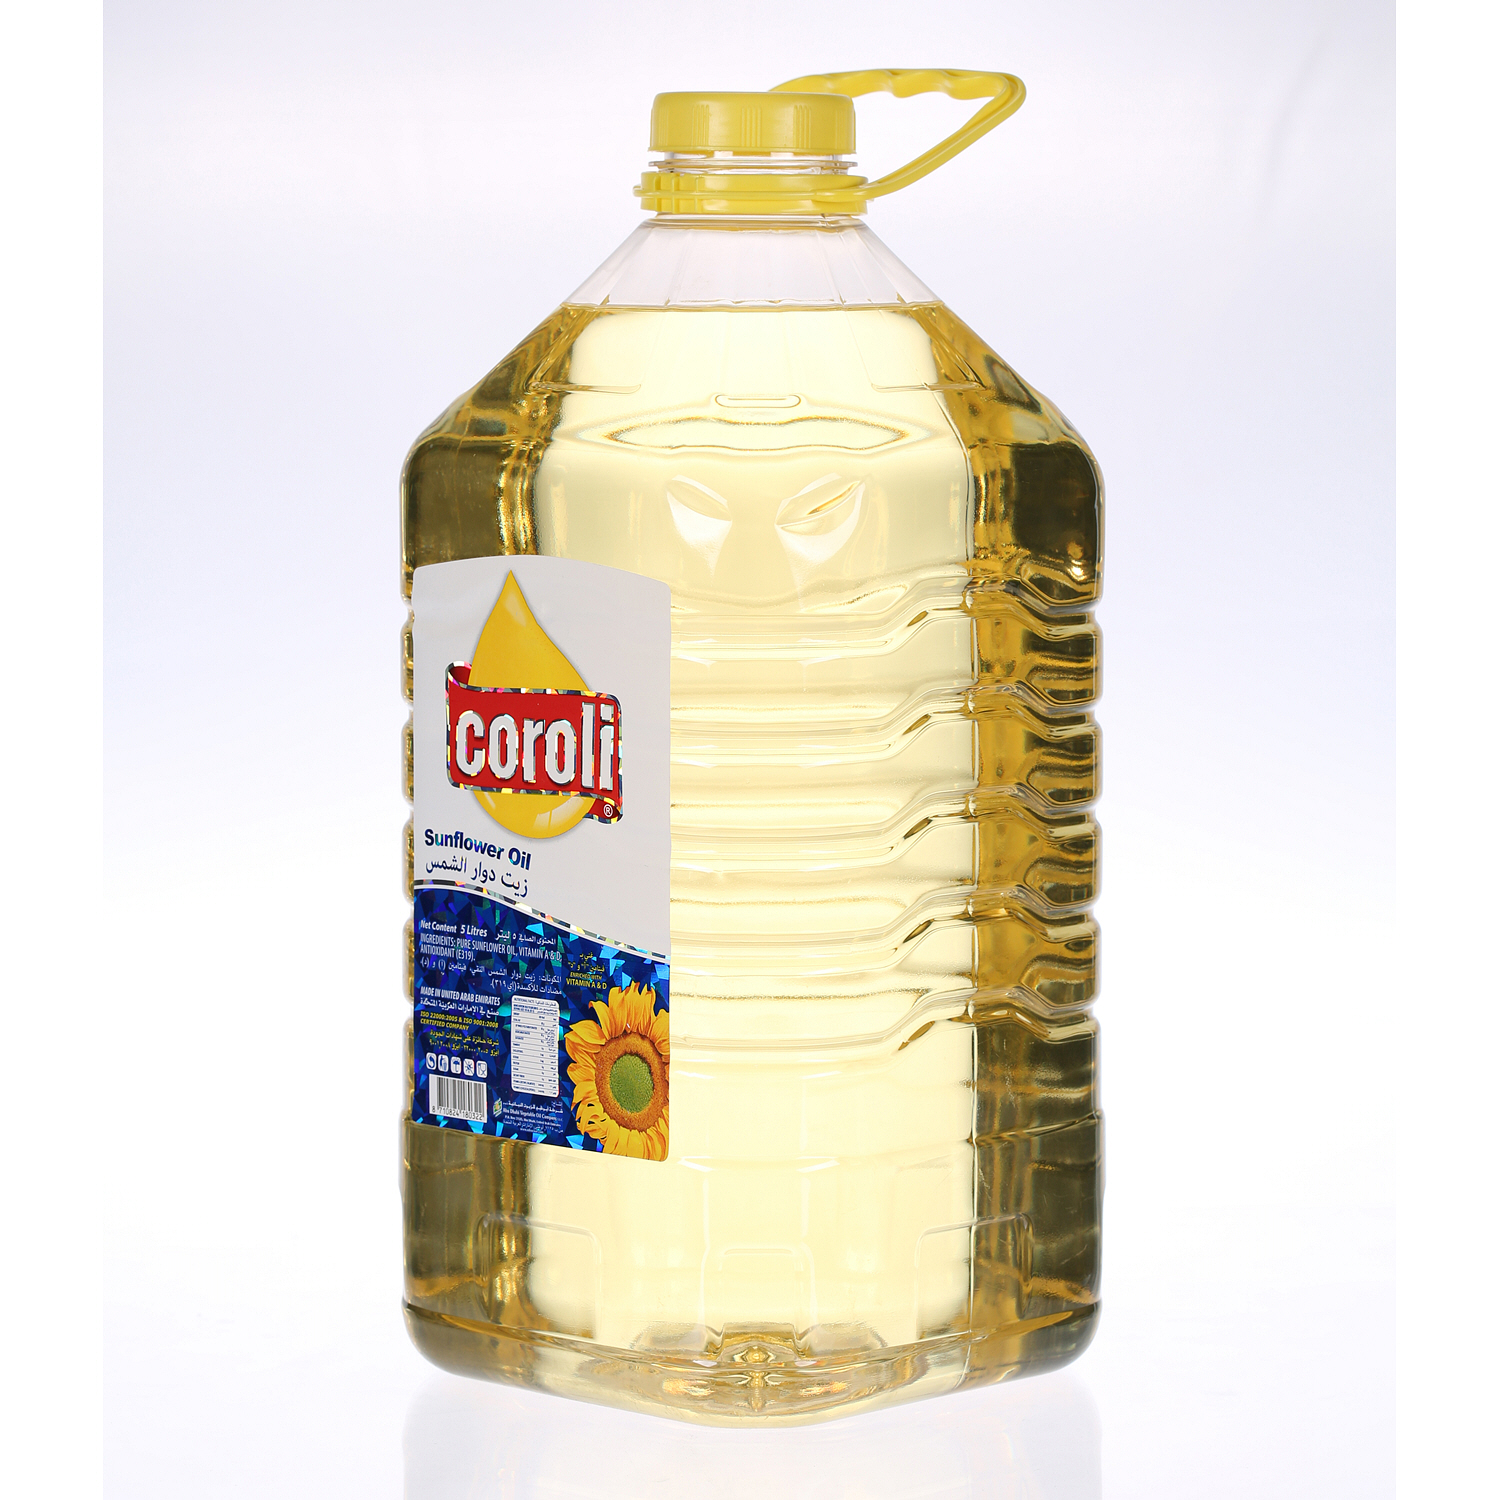 Coroli Sunflower Oil Plastic Bottle Can 5Ltr